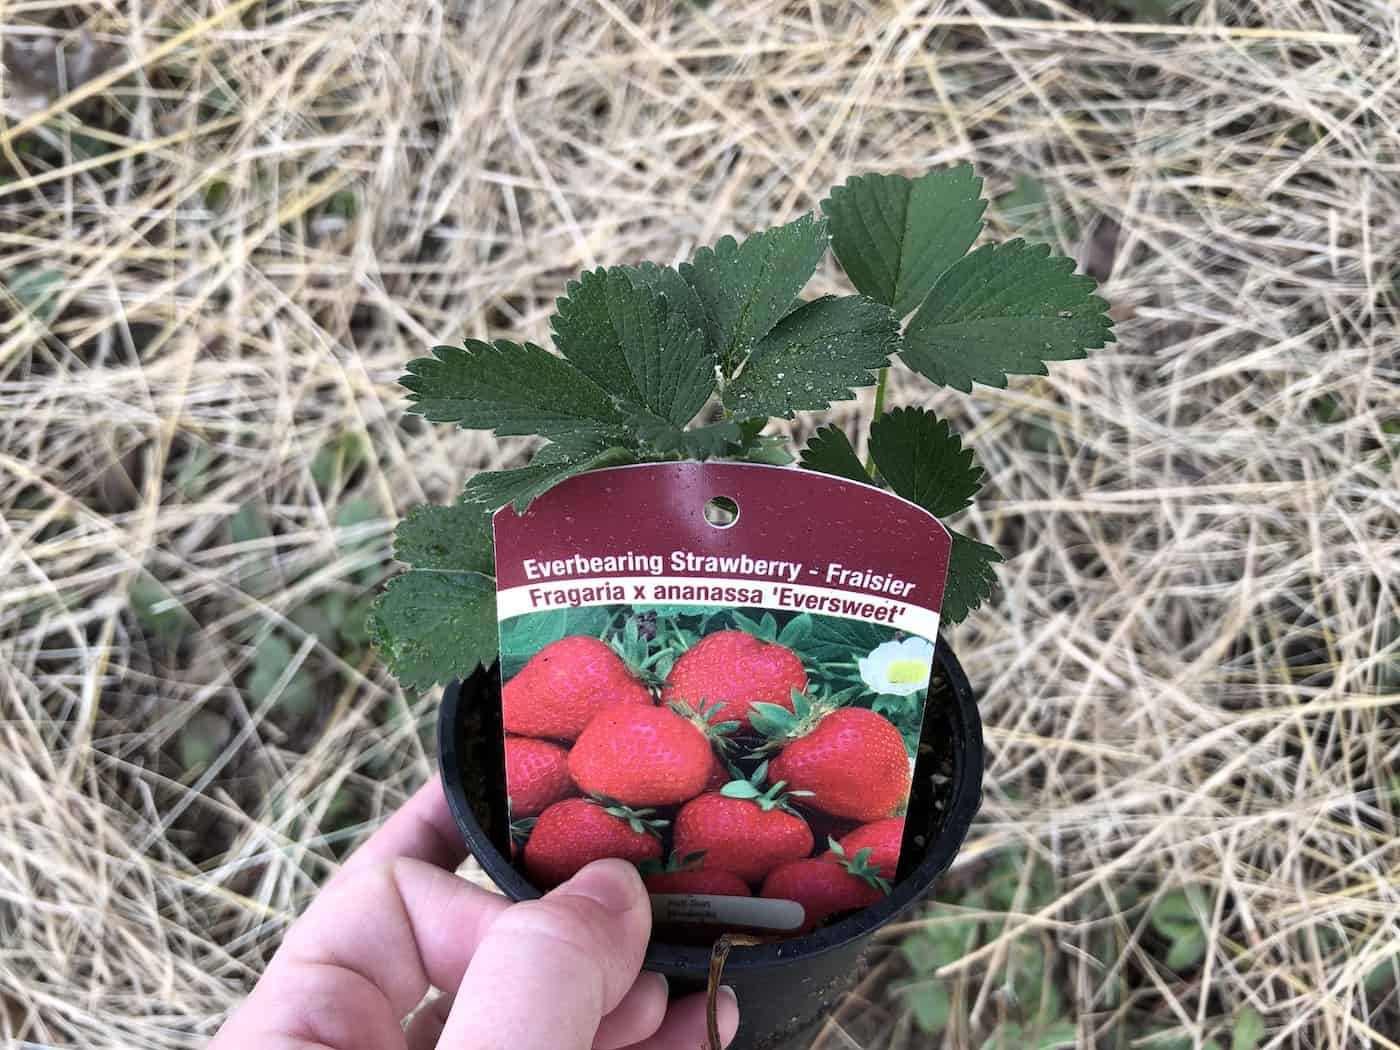 Planting eversweet strawberries